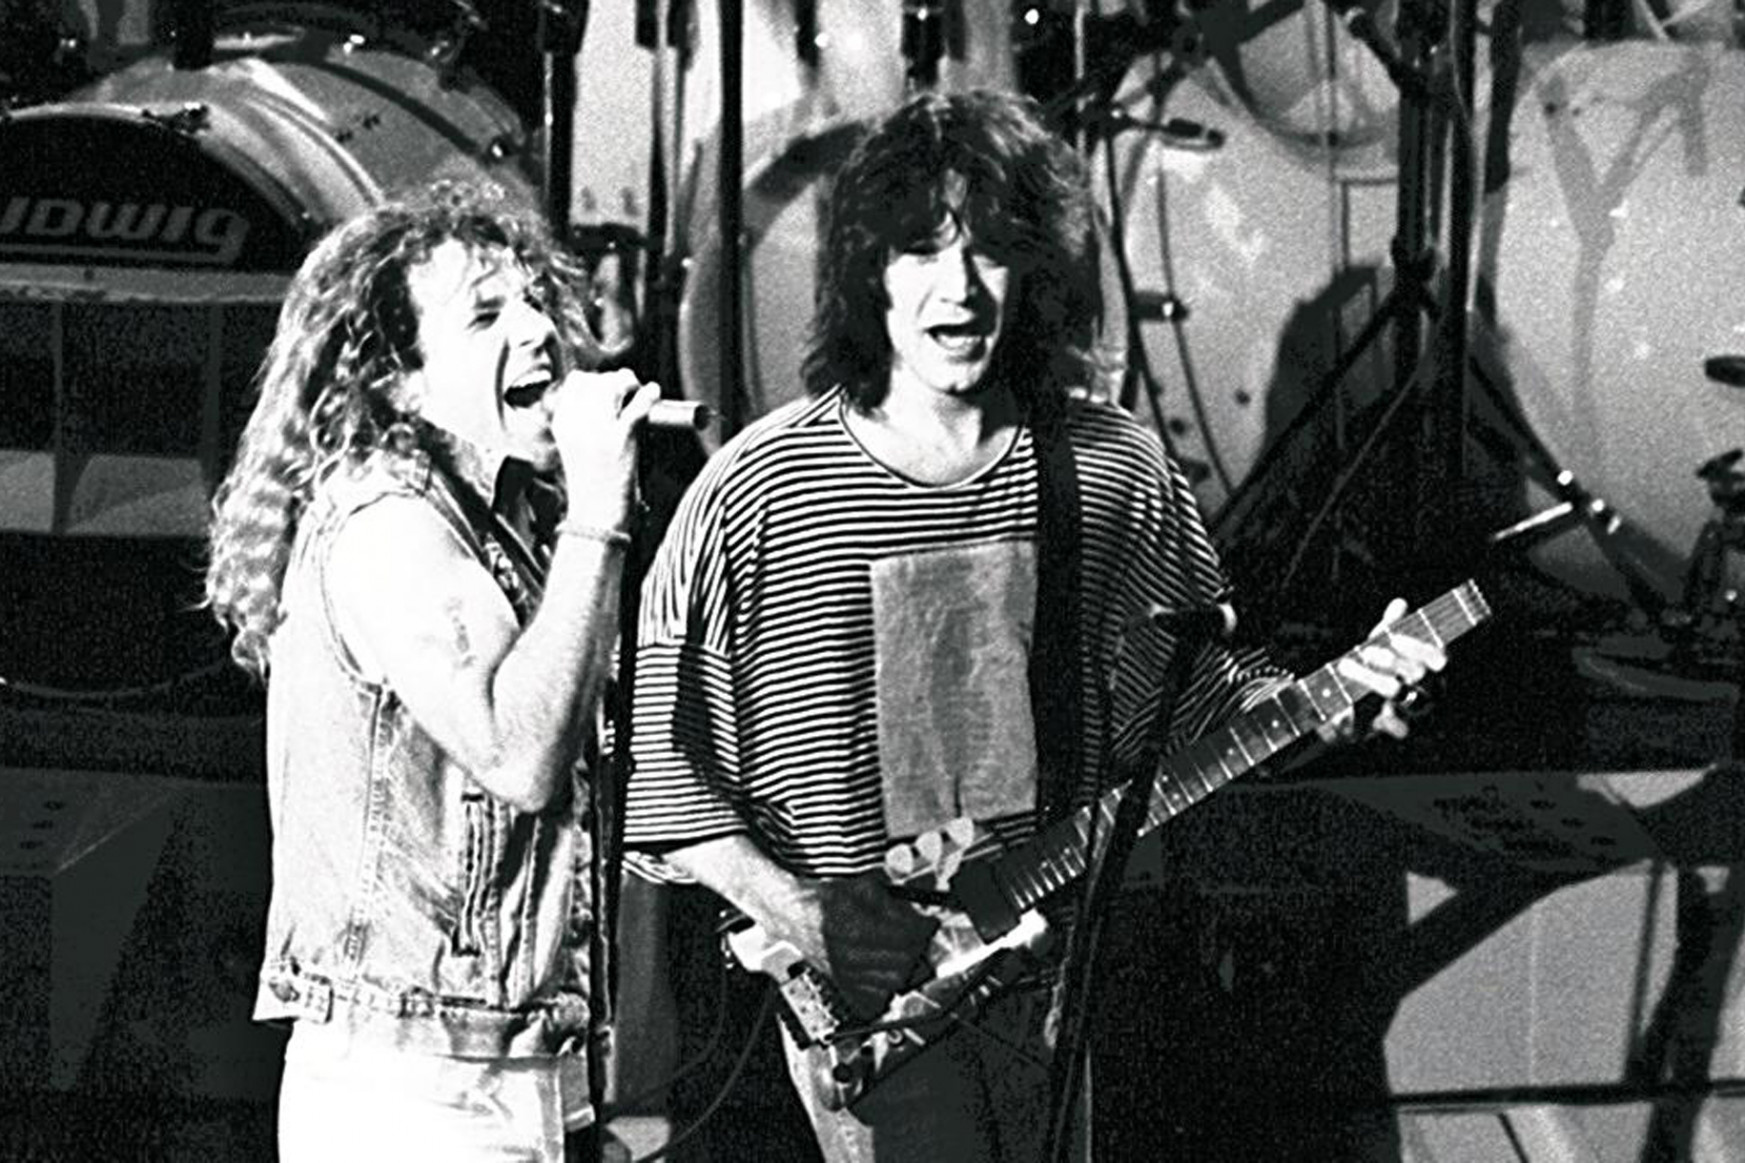 Eddie Van Halen nemcsak szimpla rockgitáros volt, hanem a műfaj úttörője